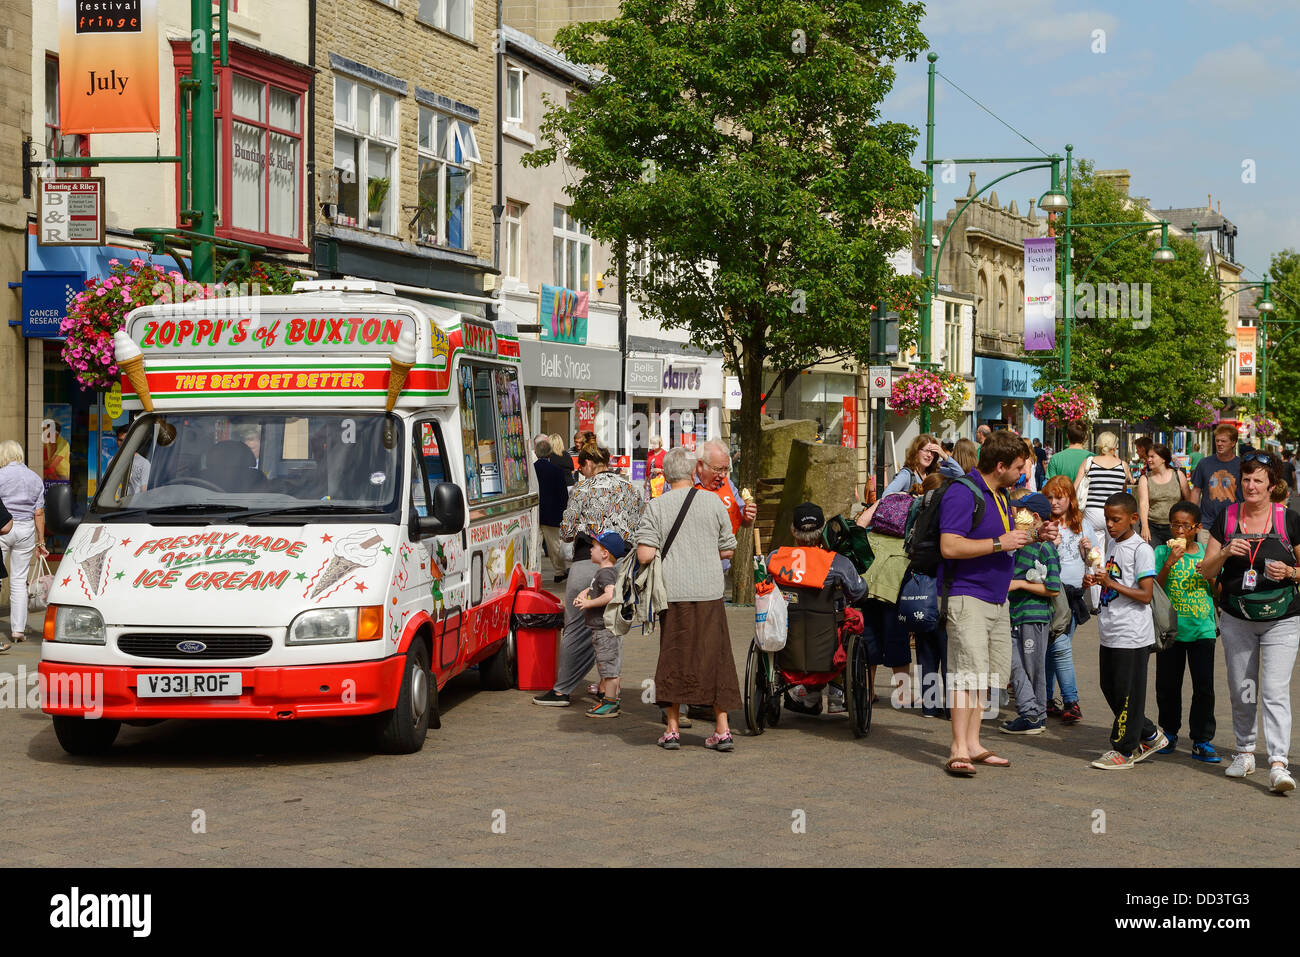 Les touristes et visiteurs près de shoppers une glace van sur la principale rue commerçante à Buxton UK Banque D'Images